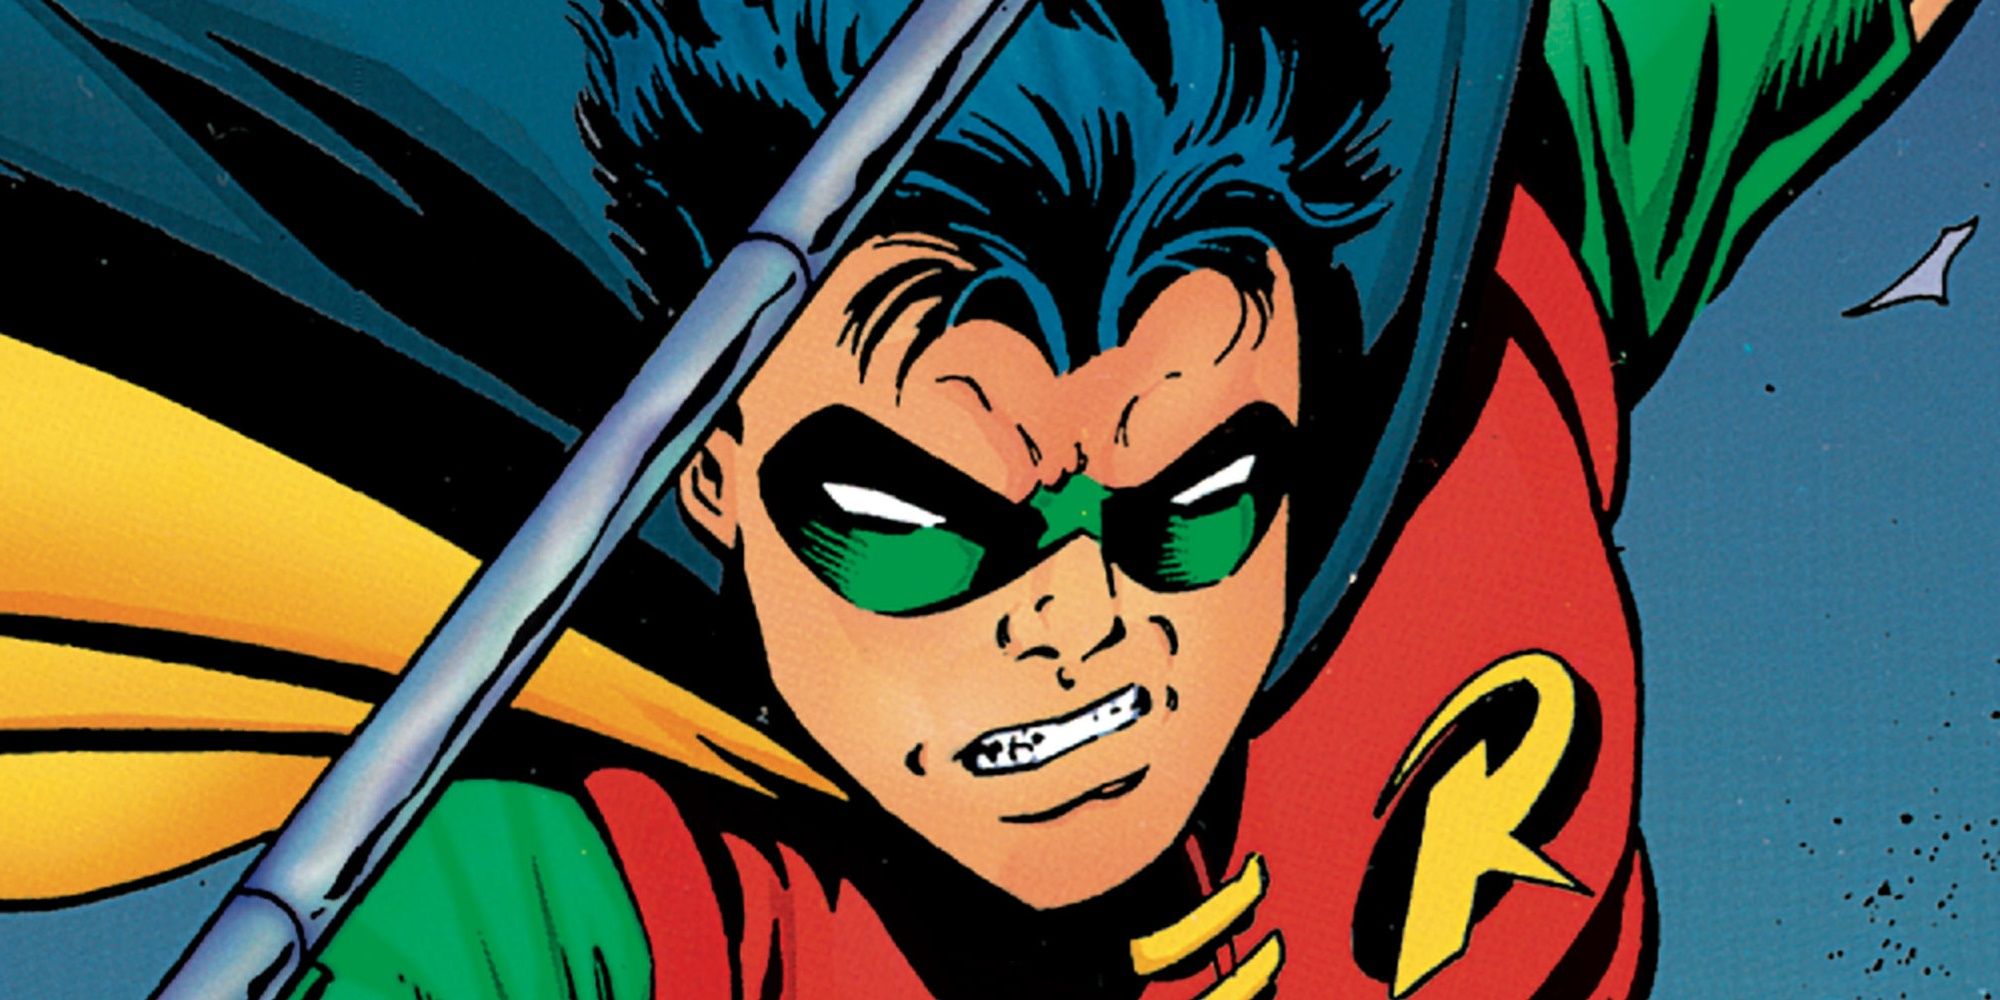 Tim Drake As Robin From DC Comics